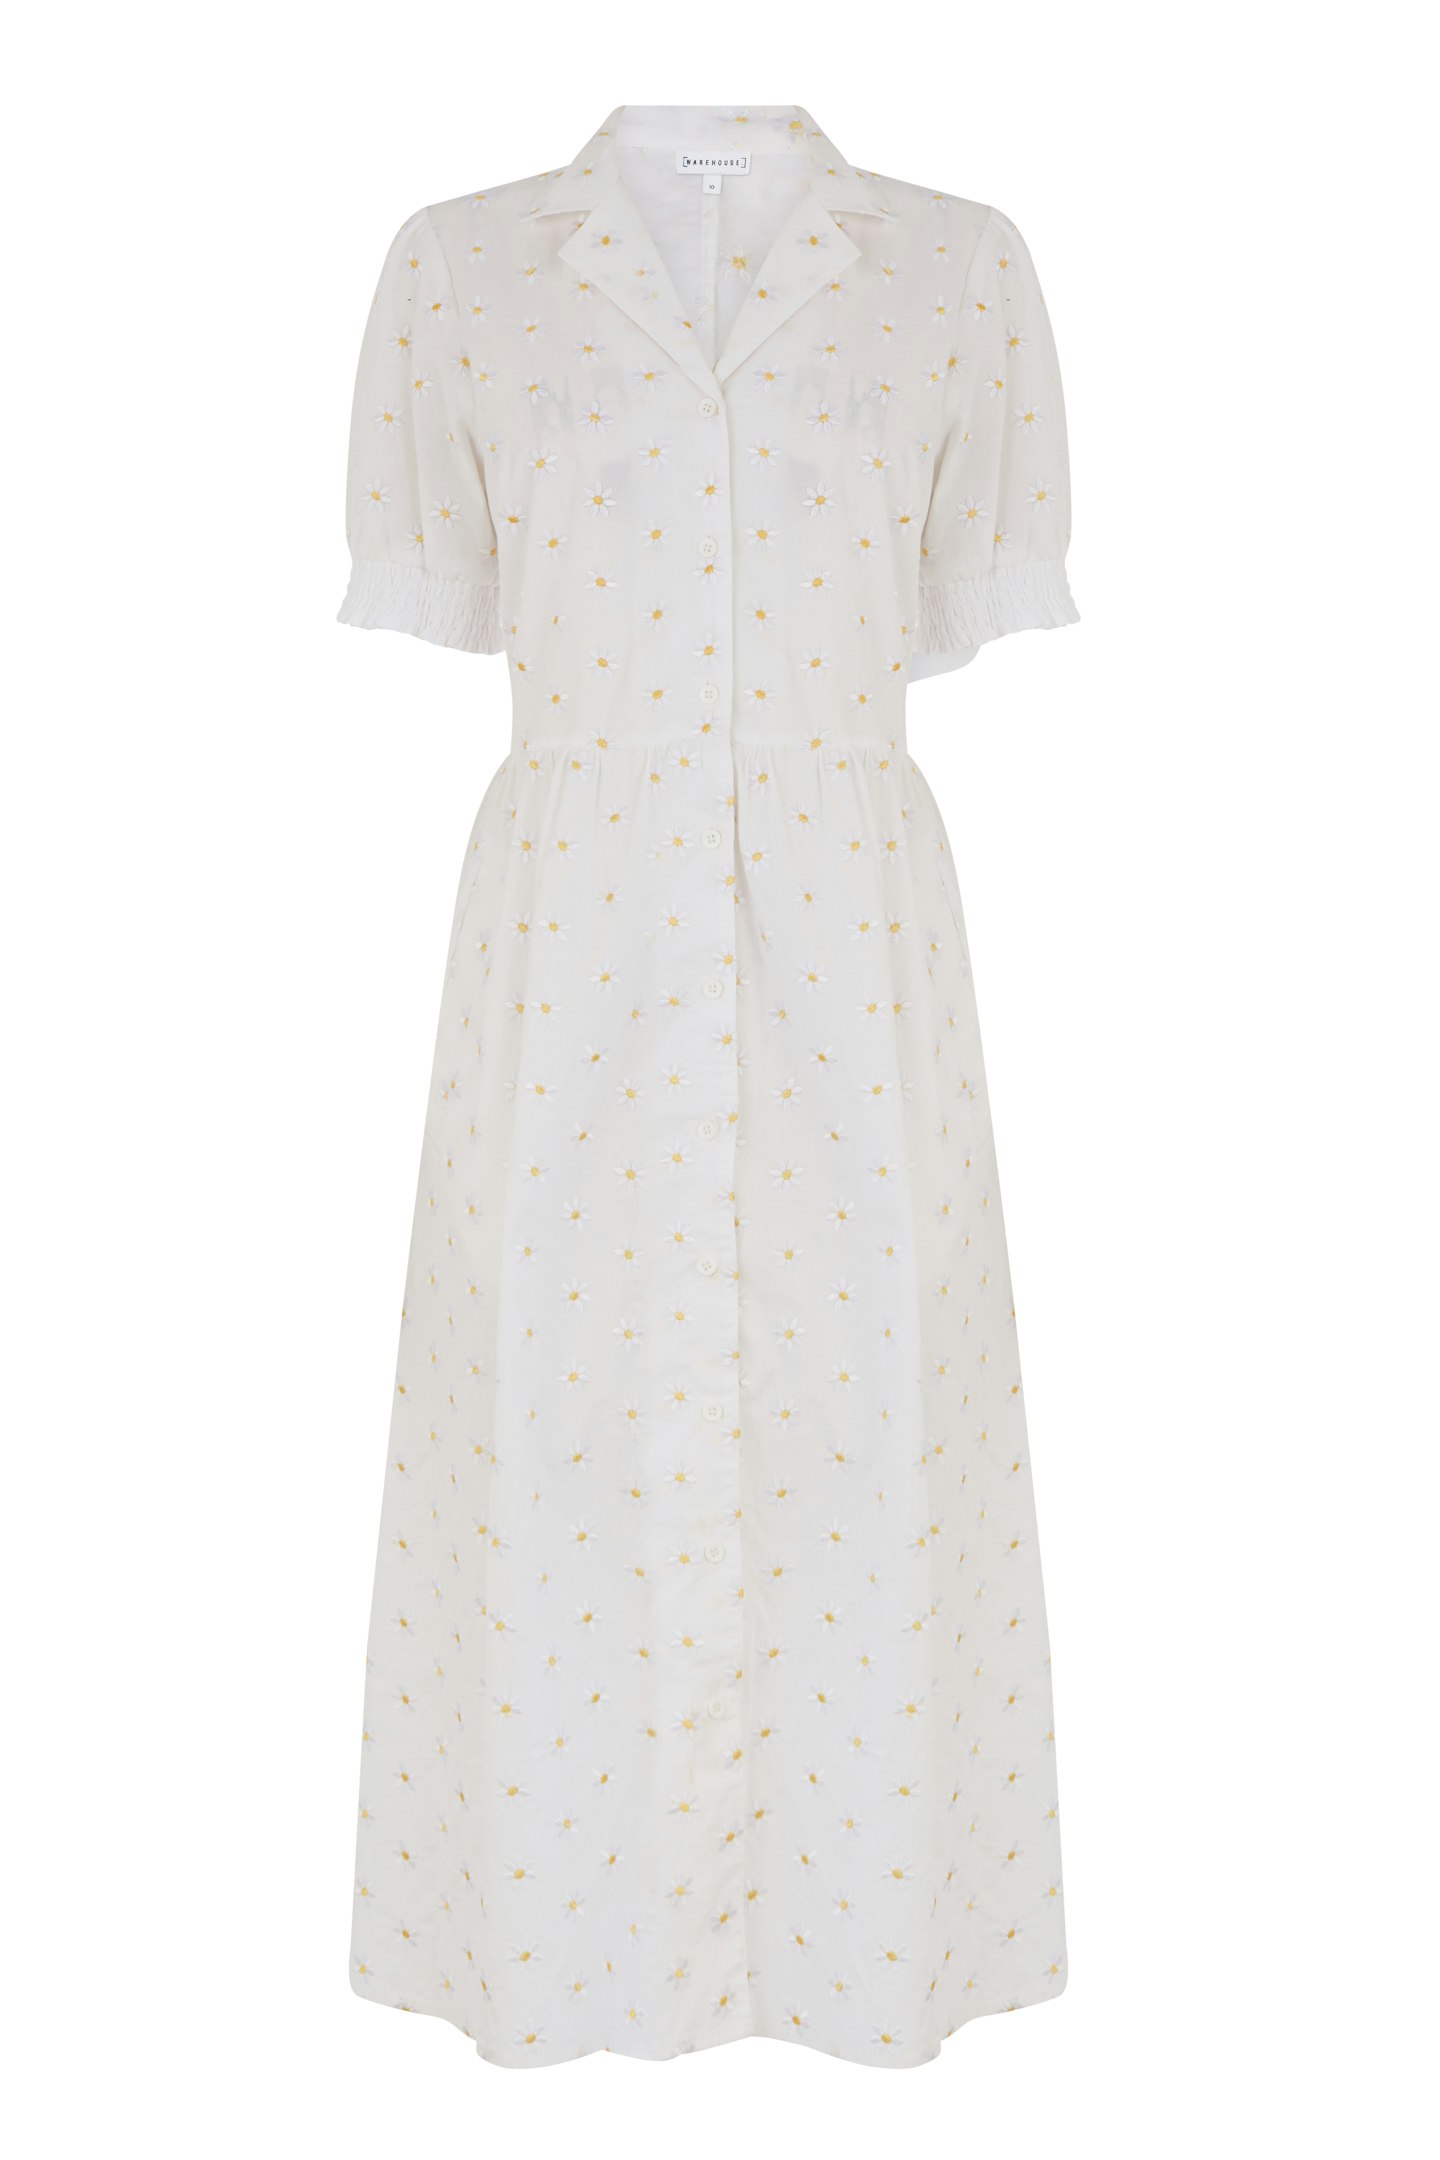 Daisy Midi dress, £99